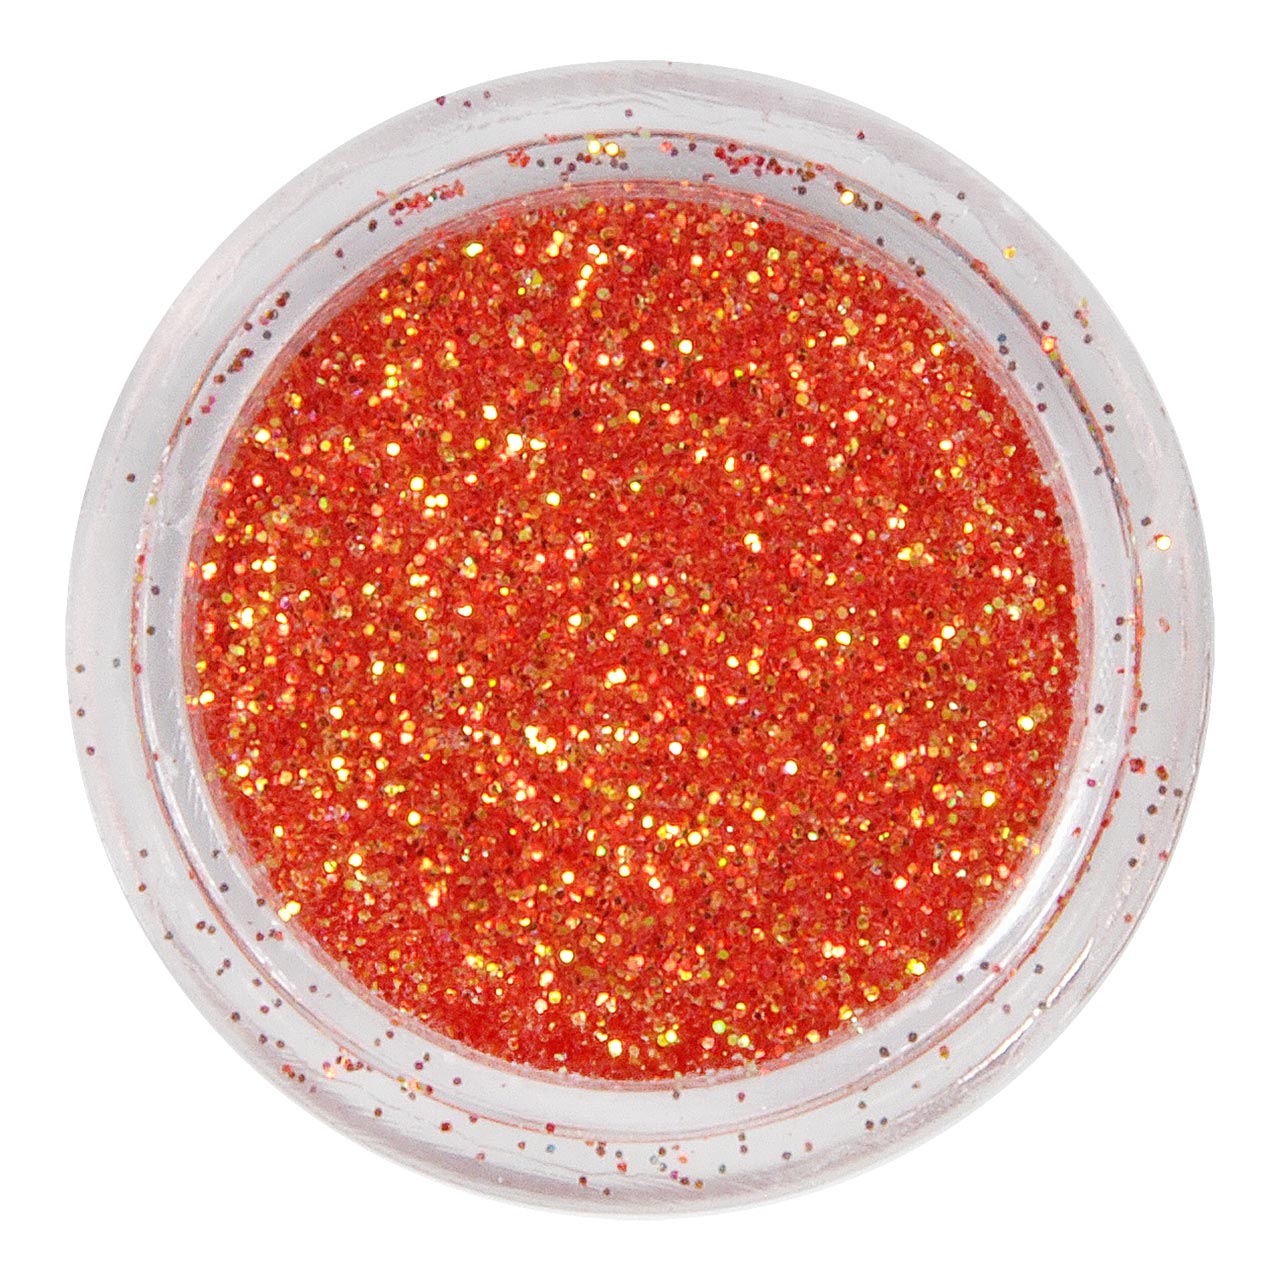 Glitter in Dose - Rust-Red